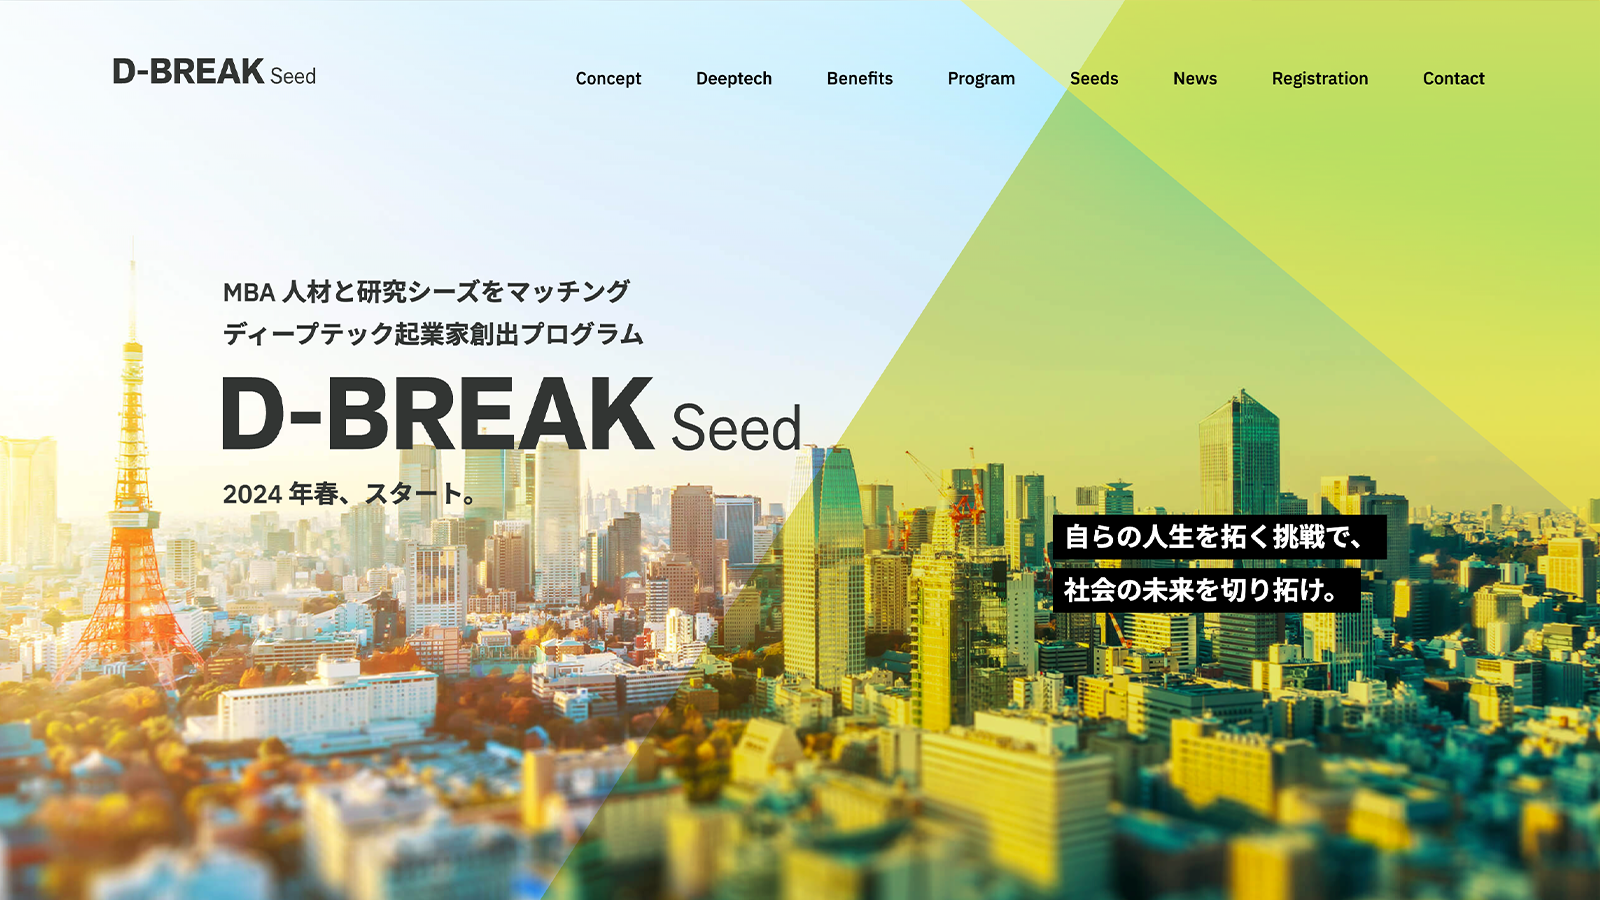 D-BREAK Seed